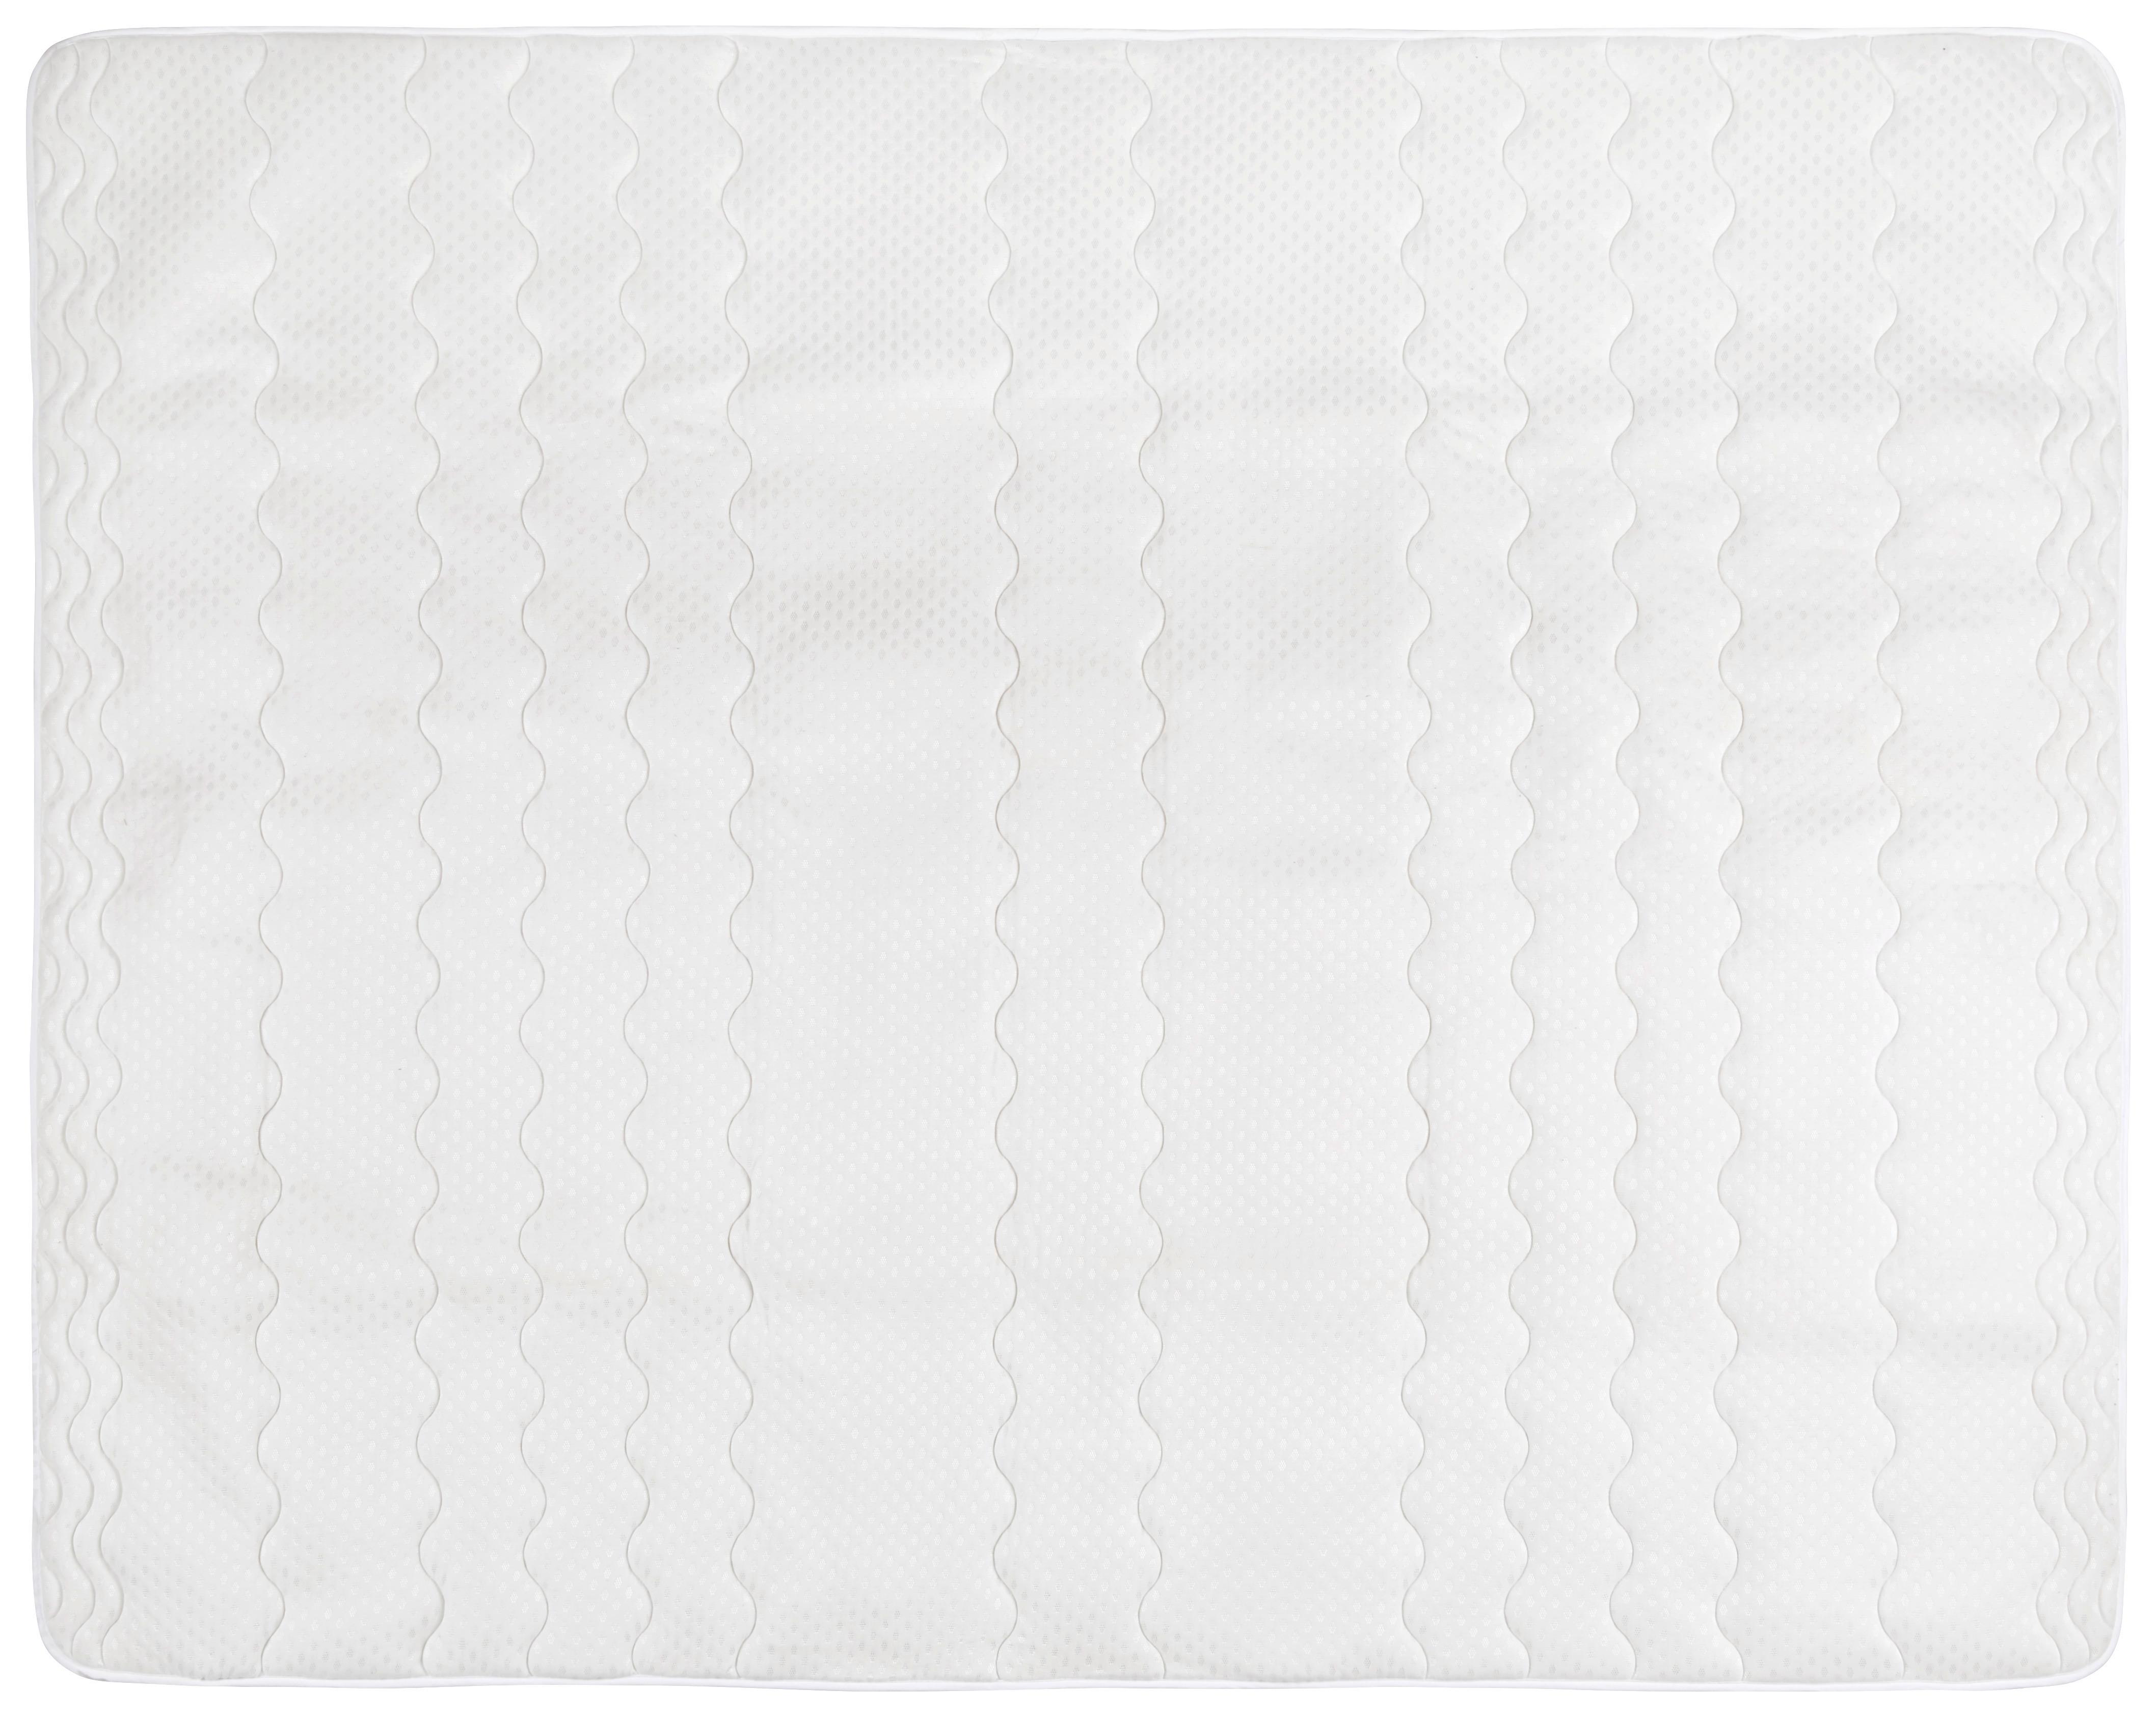 Podložka/chránič Matrace Visco, 180/200cm, Bílá - bílá, textil (180/200cm) - Nadana